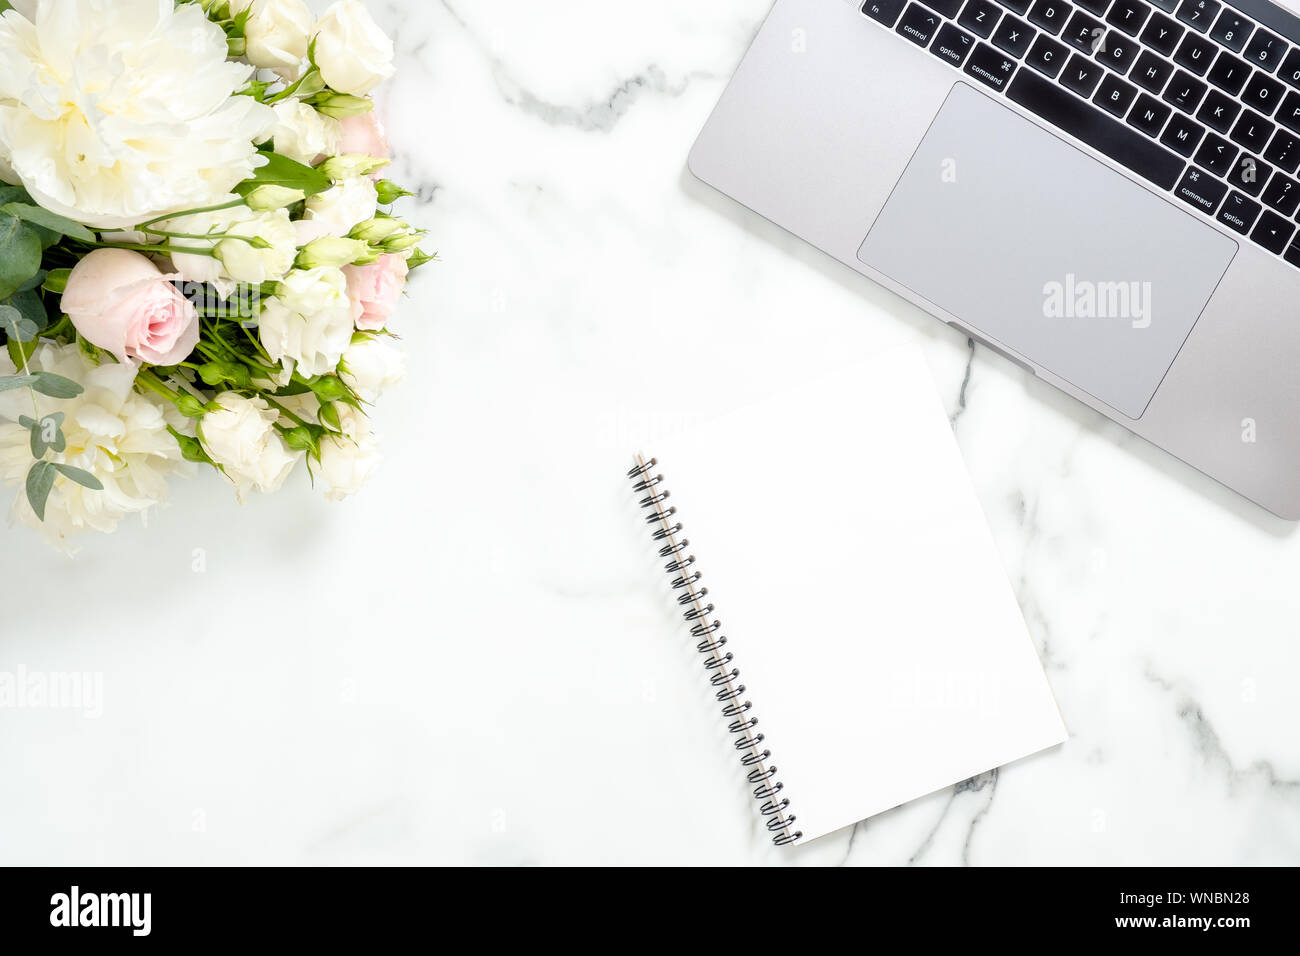 Flach home office Schreibtisch. Weibliche Arbeitsbereich mit Laptop, Blumen, Papier notepad auf weißem Marmor Oberfläche. Ansicht von oben feminin Hintergrund. Busine Stockfoto